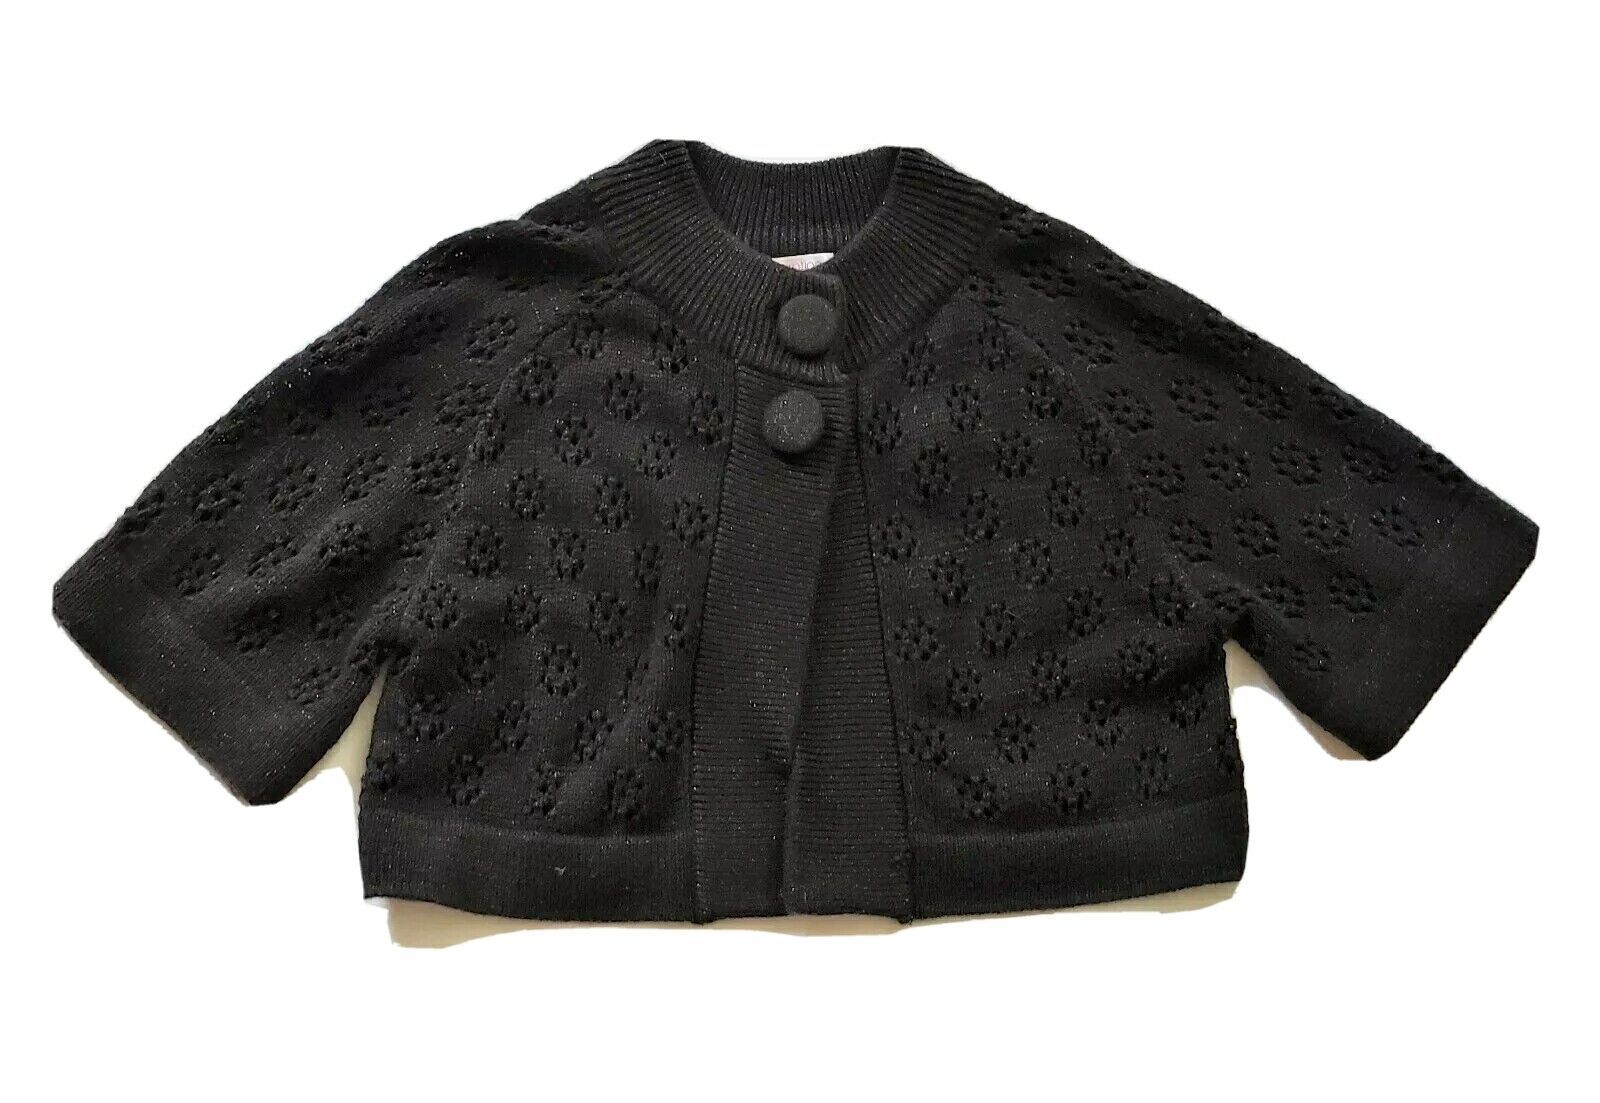 Xhilaration girls black open knit Sweater cardigan short sleeve size M - $9.99